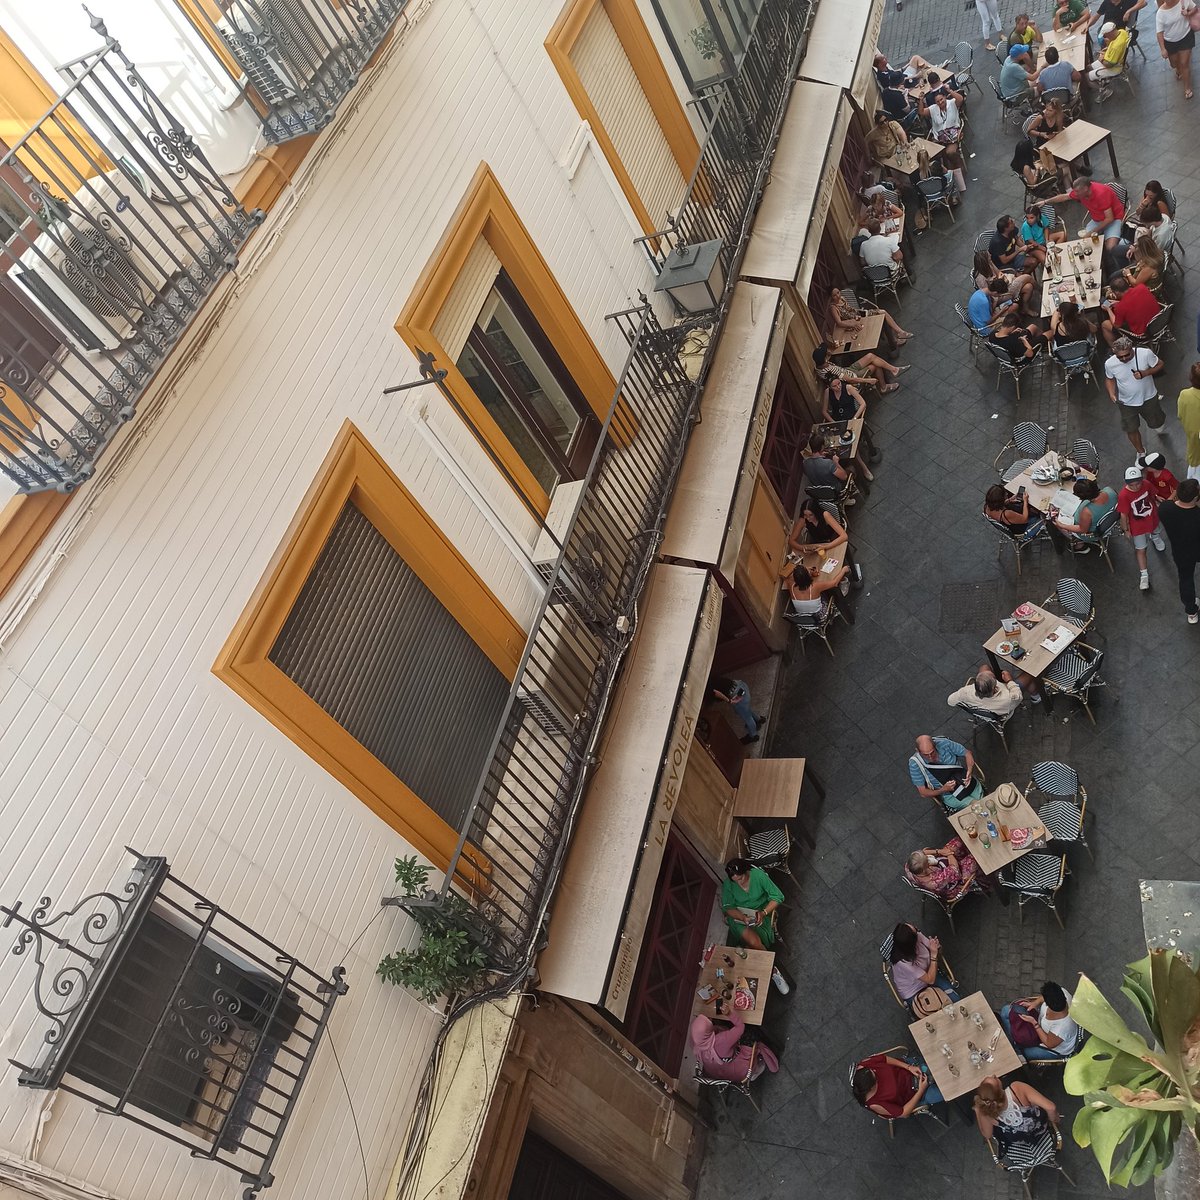 @SevillaTourism Esta es la verdadera accesibilidad universal para invidentes y sillas de ruedas en las calles de #Sevillahoy... 

@CermiAUniversal
@ComisionEuropea
@jlsanzalcalde
#EuTourismcapital
#SharingIsSmart